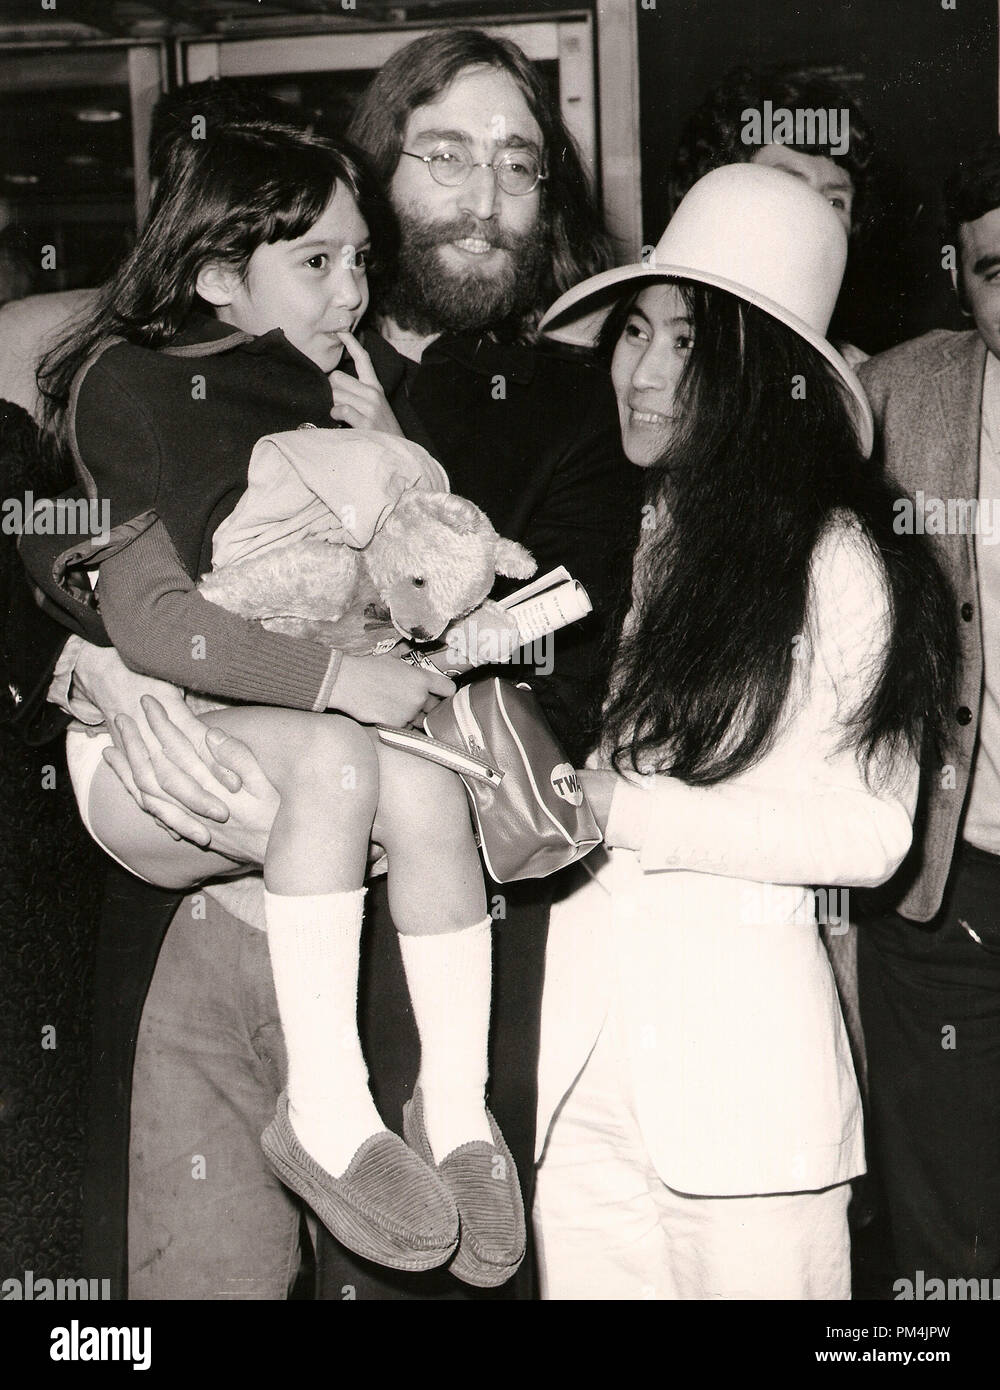 John Lennon e Yoko Ono con Yoko la figlia di cinque anni ,Kyyoko, dal suo ex marito Anthony Coz,1969. Riferimento al file #1013 003 THA © CCR /Hollywood Archivio - Tutti i diritti riservati. Foto Stock